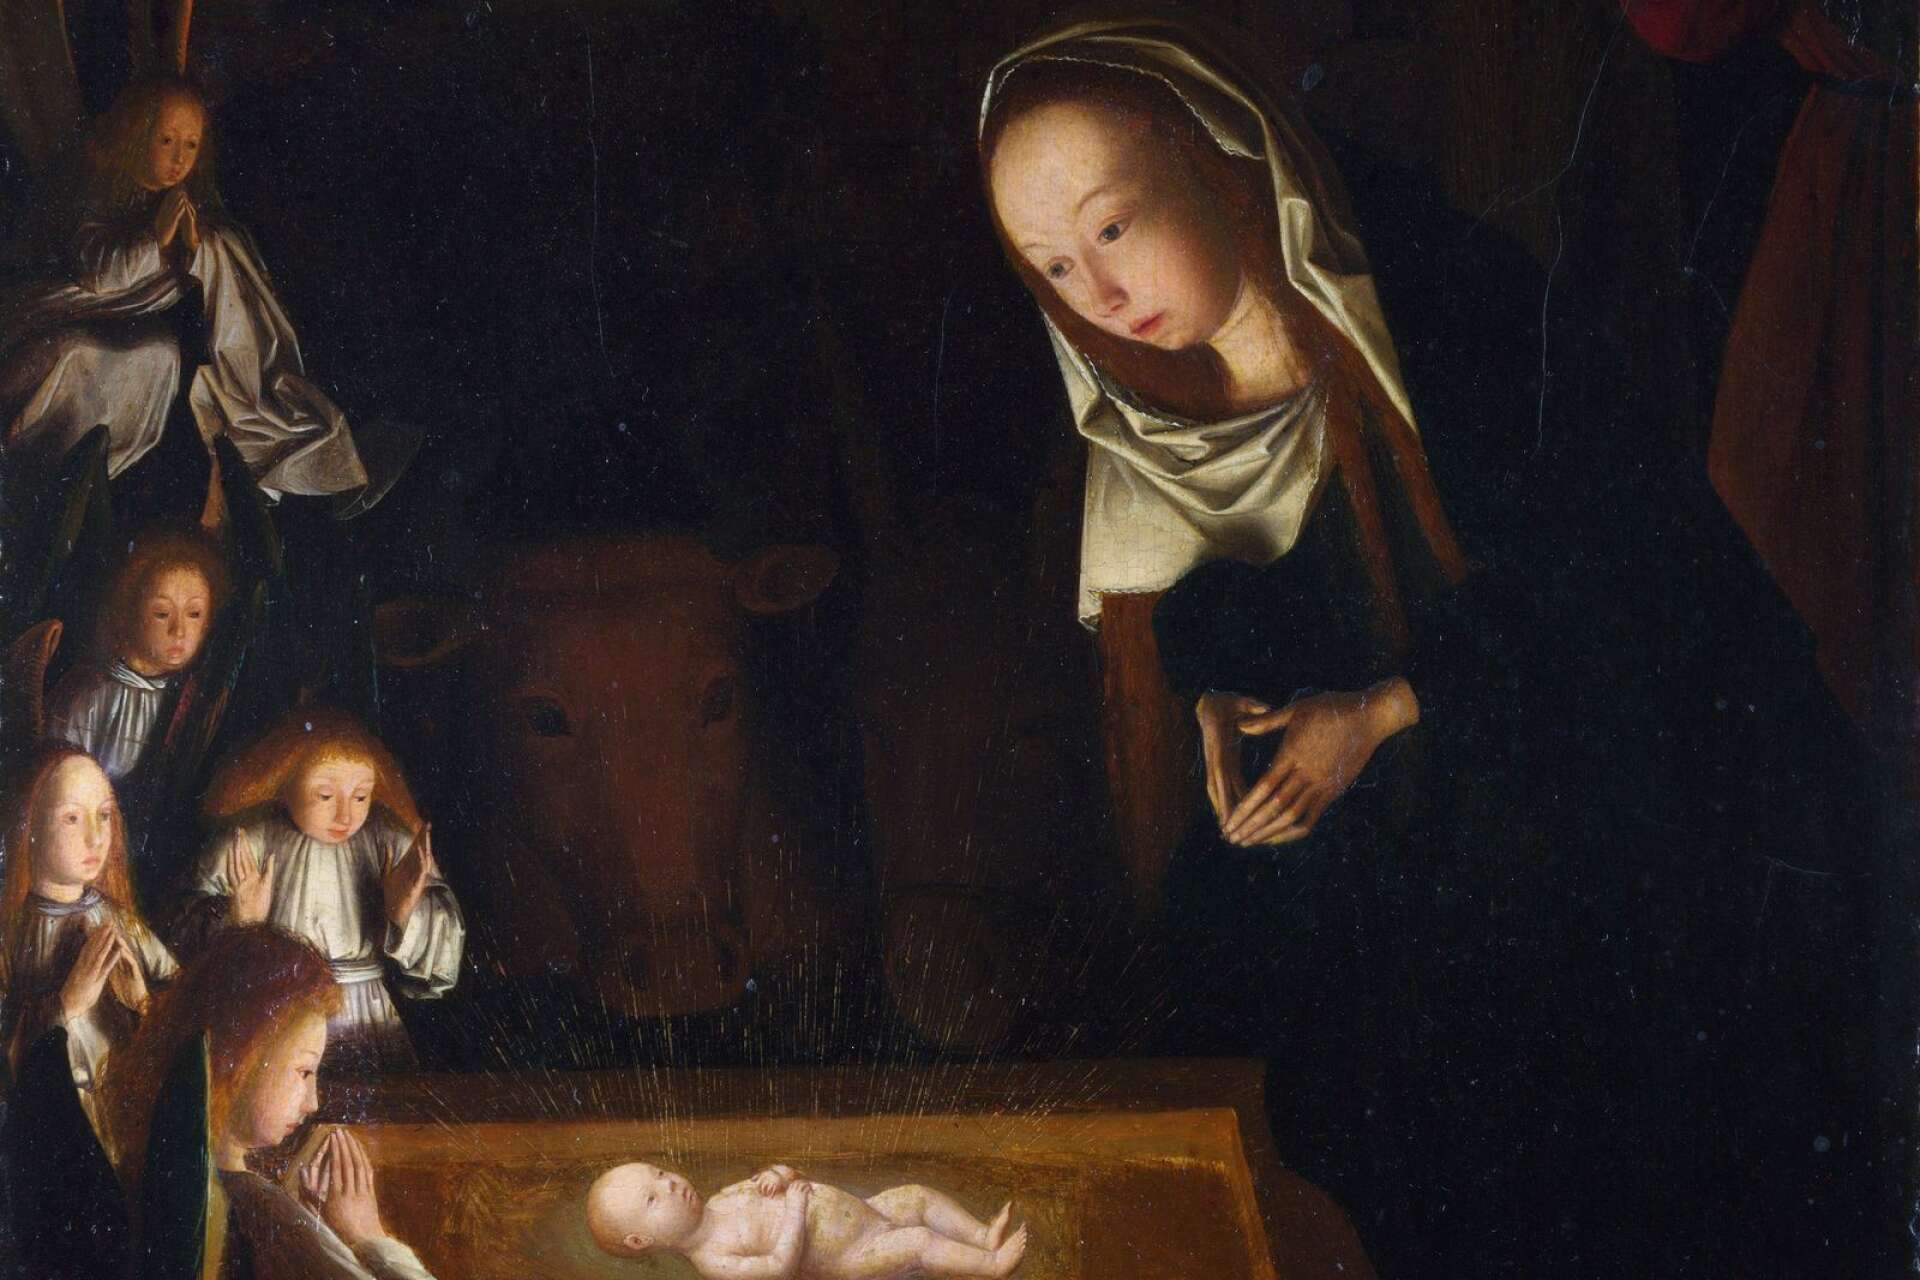 Birth of Jesus, av den nederländsk konstnären Geertgen tot Sint Jans.